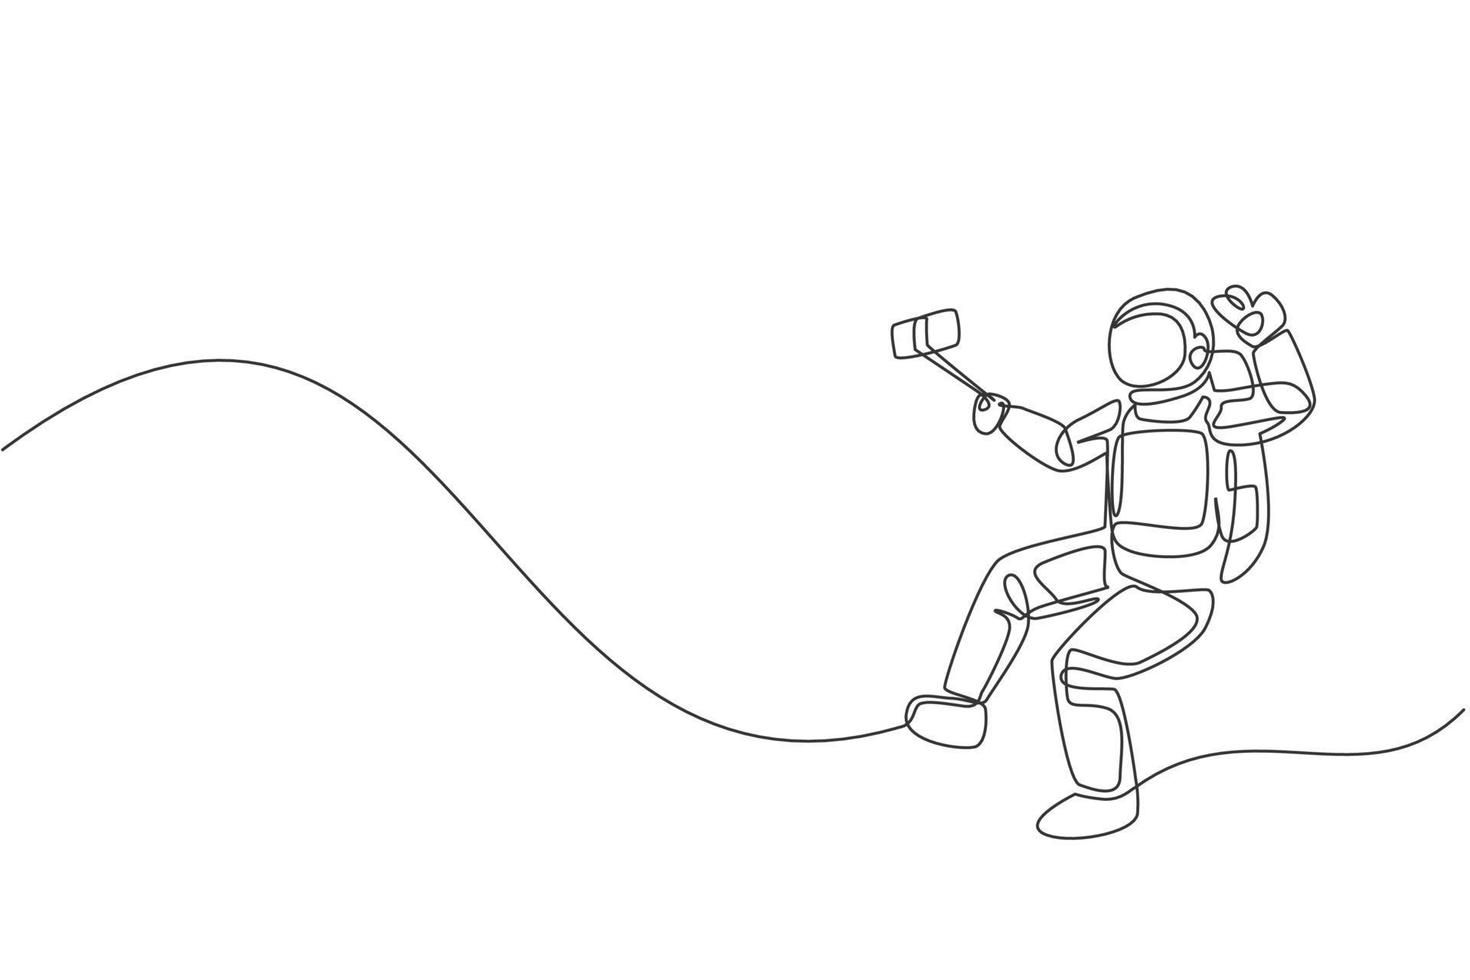 desenho de linha única contínua de jovem astronauta fazendo selfie enquanto flutuando no espaço sideral. conceito de galáxia cósmica do homem do espaço. tendência de uma linha desenhar ilustração vetorial de design gráfico vetor